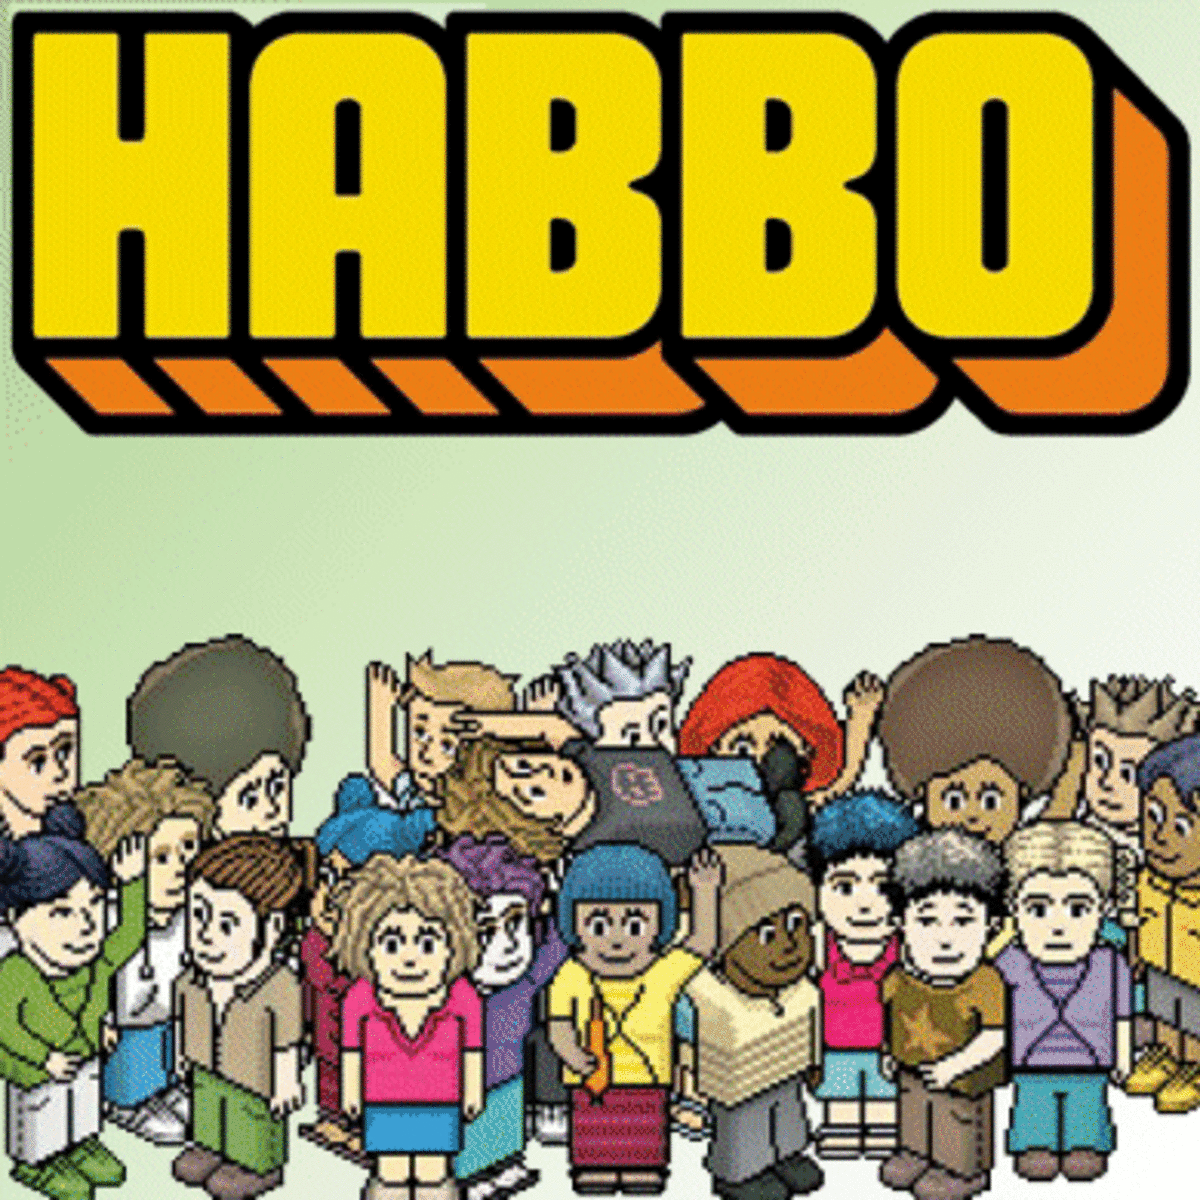 habbo